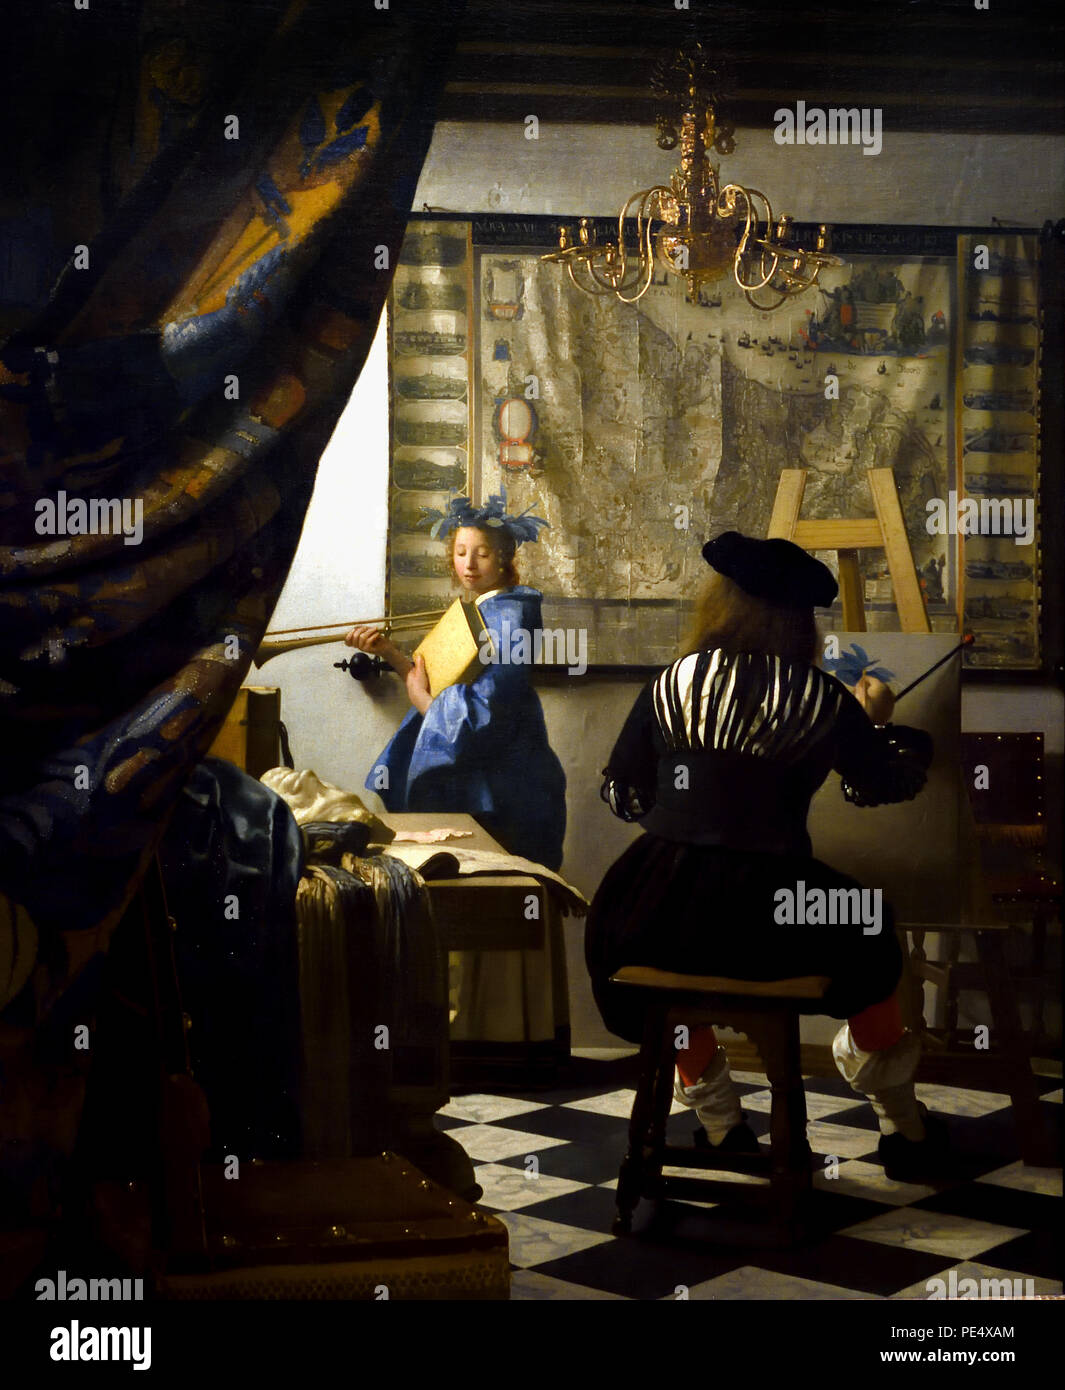 The Art of Painting, auch bekannt als Allegory of Painting, oder Maler in seinem Studio von Johannes Vermeer 1632 - 1675 Niederlande, Niederländisch, ( die Malkunst mit der Darstellung des Malers im Studio Vermeer übertreibt das Genre-Bild zu einer Allegorie der Malerei. Sein Modell ist Klio. Holländischer Maler im Goldenen Zeitalter, einer der größten Maler des 17. Jahrhunderts. Bevorzugte zeitlose, gedämpfte Momente, bleibt rätselhaft, unnachahmliches Farbschema und verwirrender Lichtinhalt) Stockfoto